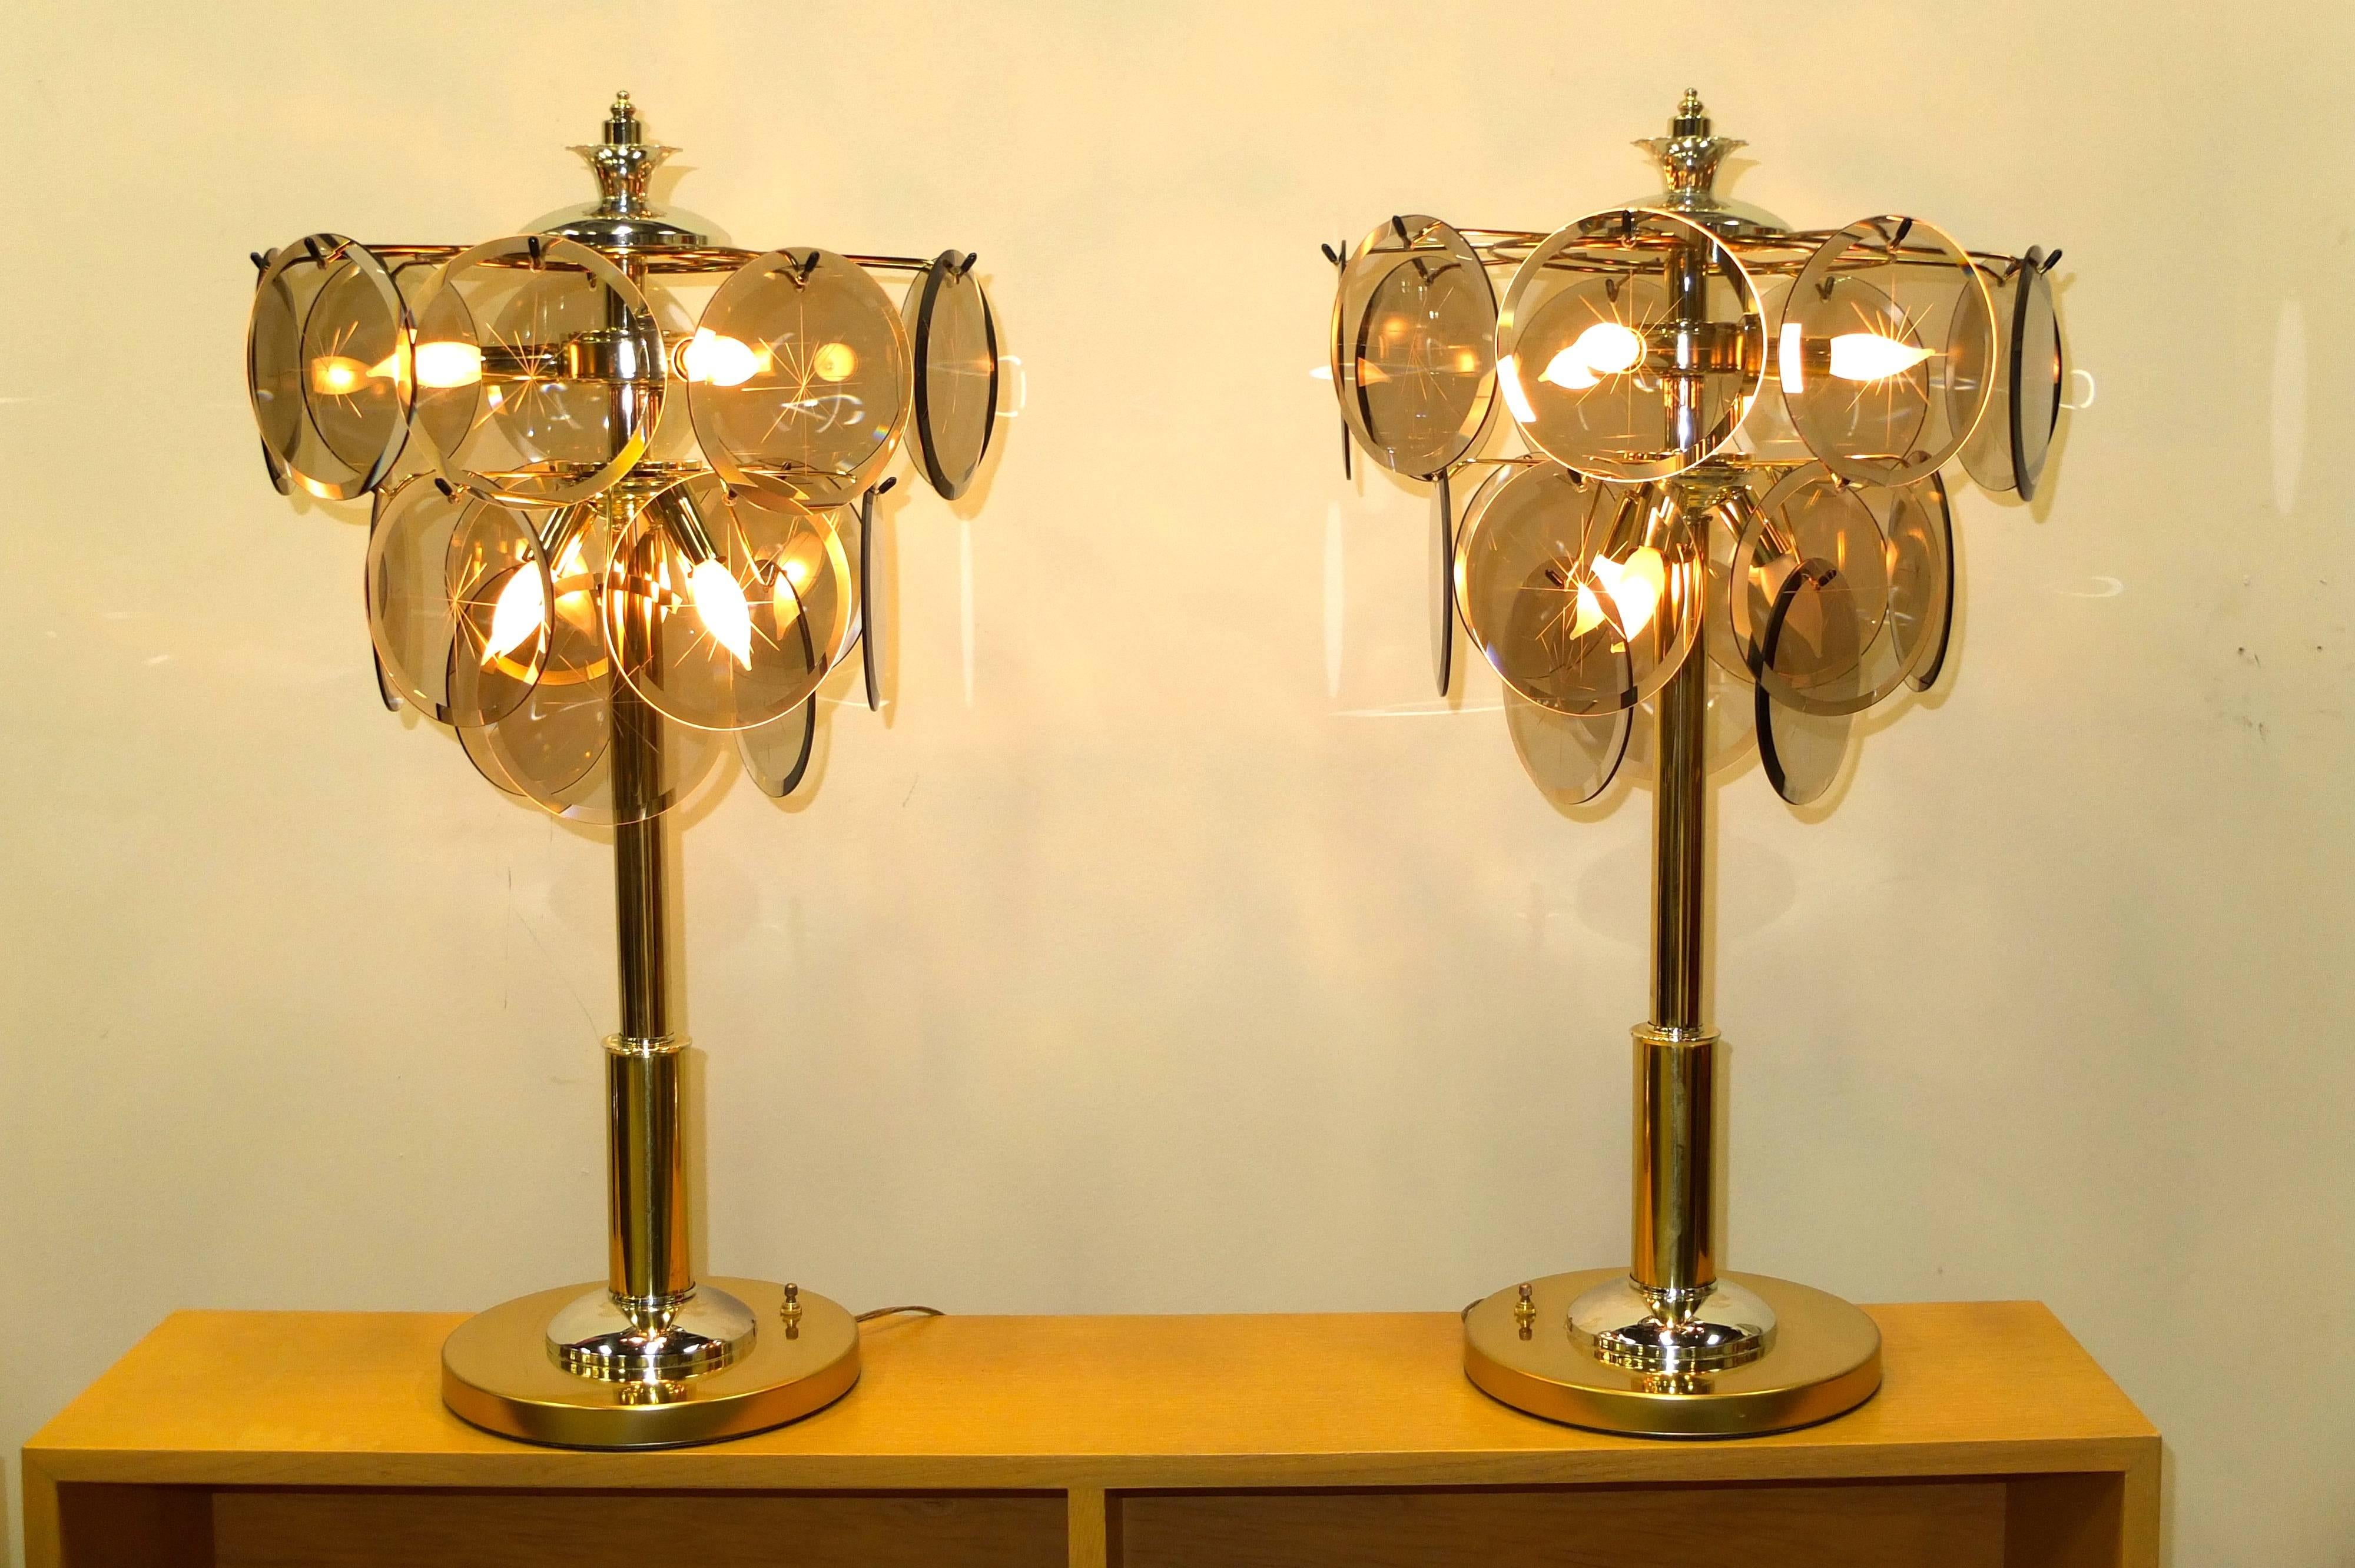 Ces lampes de table vintage sont dans un état immaculé, presque neufs vieux stock. Produites par Triarch Miami et inspirées par les célèbres lustres à disques en verre de Murano de Vistosi, de hautes colonnes de style art déco en chrome et laiton